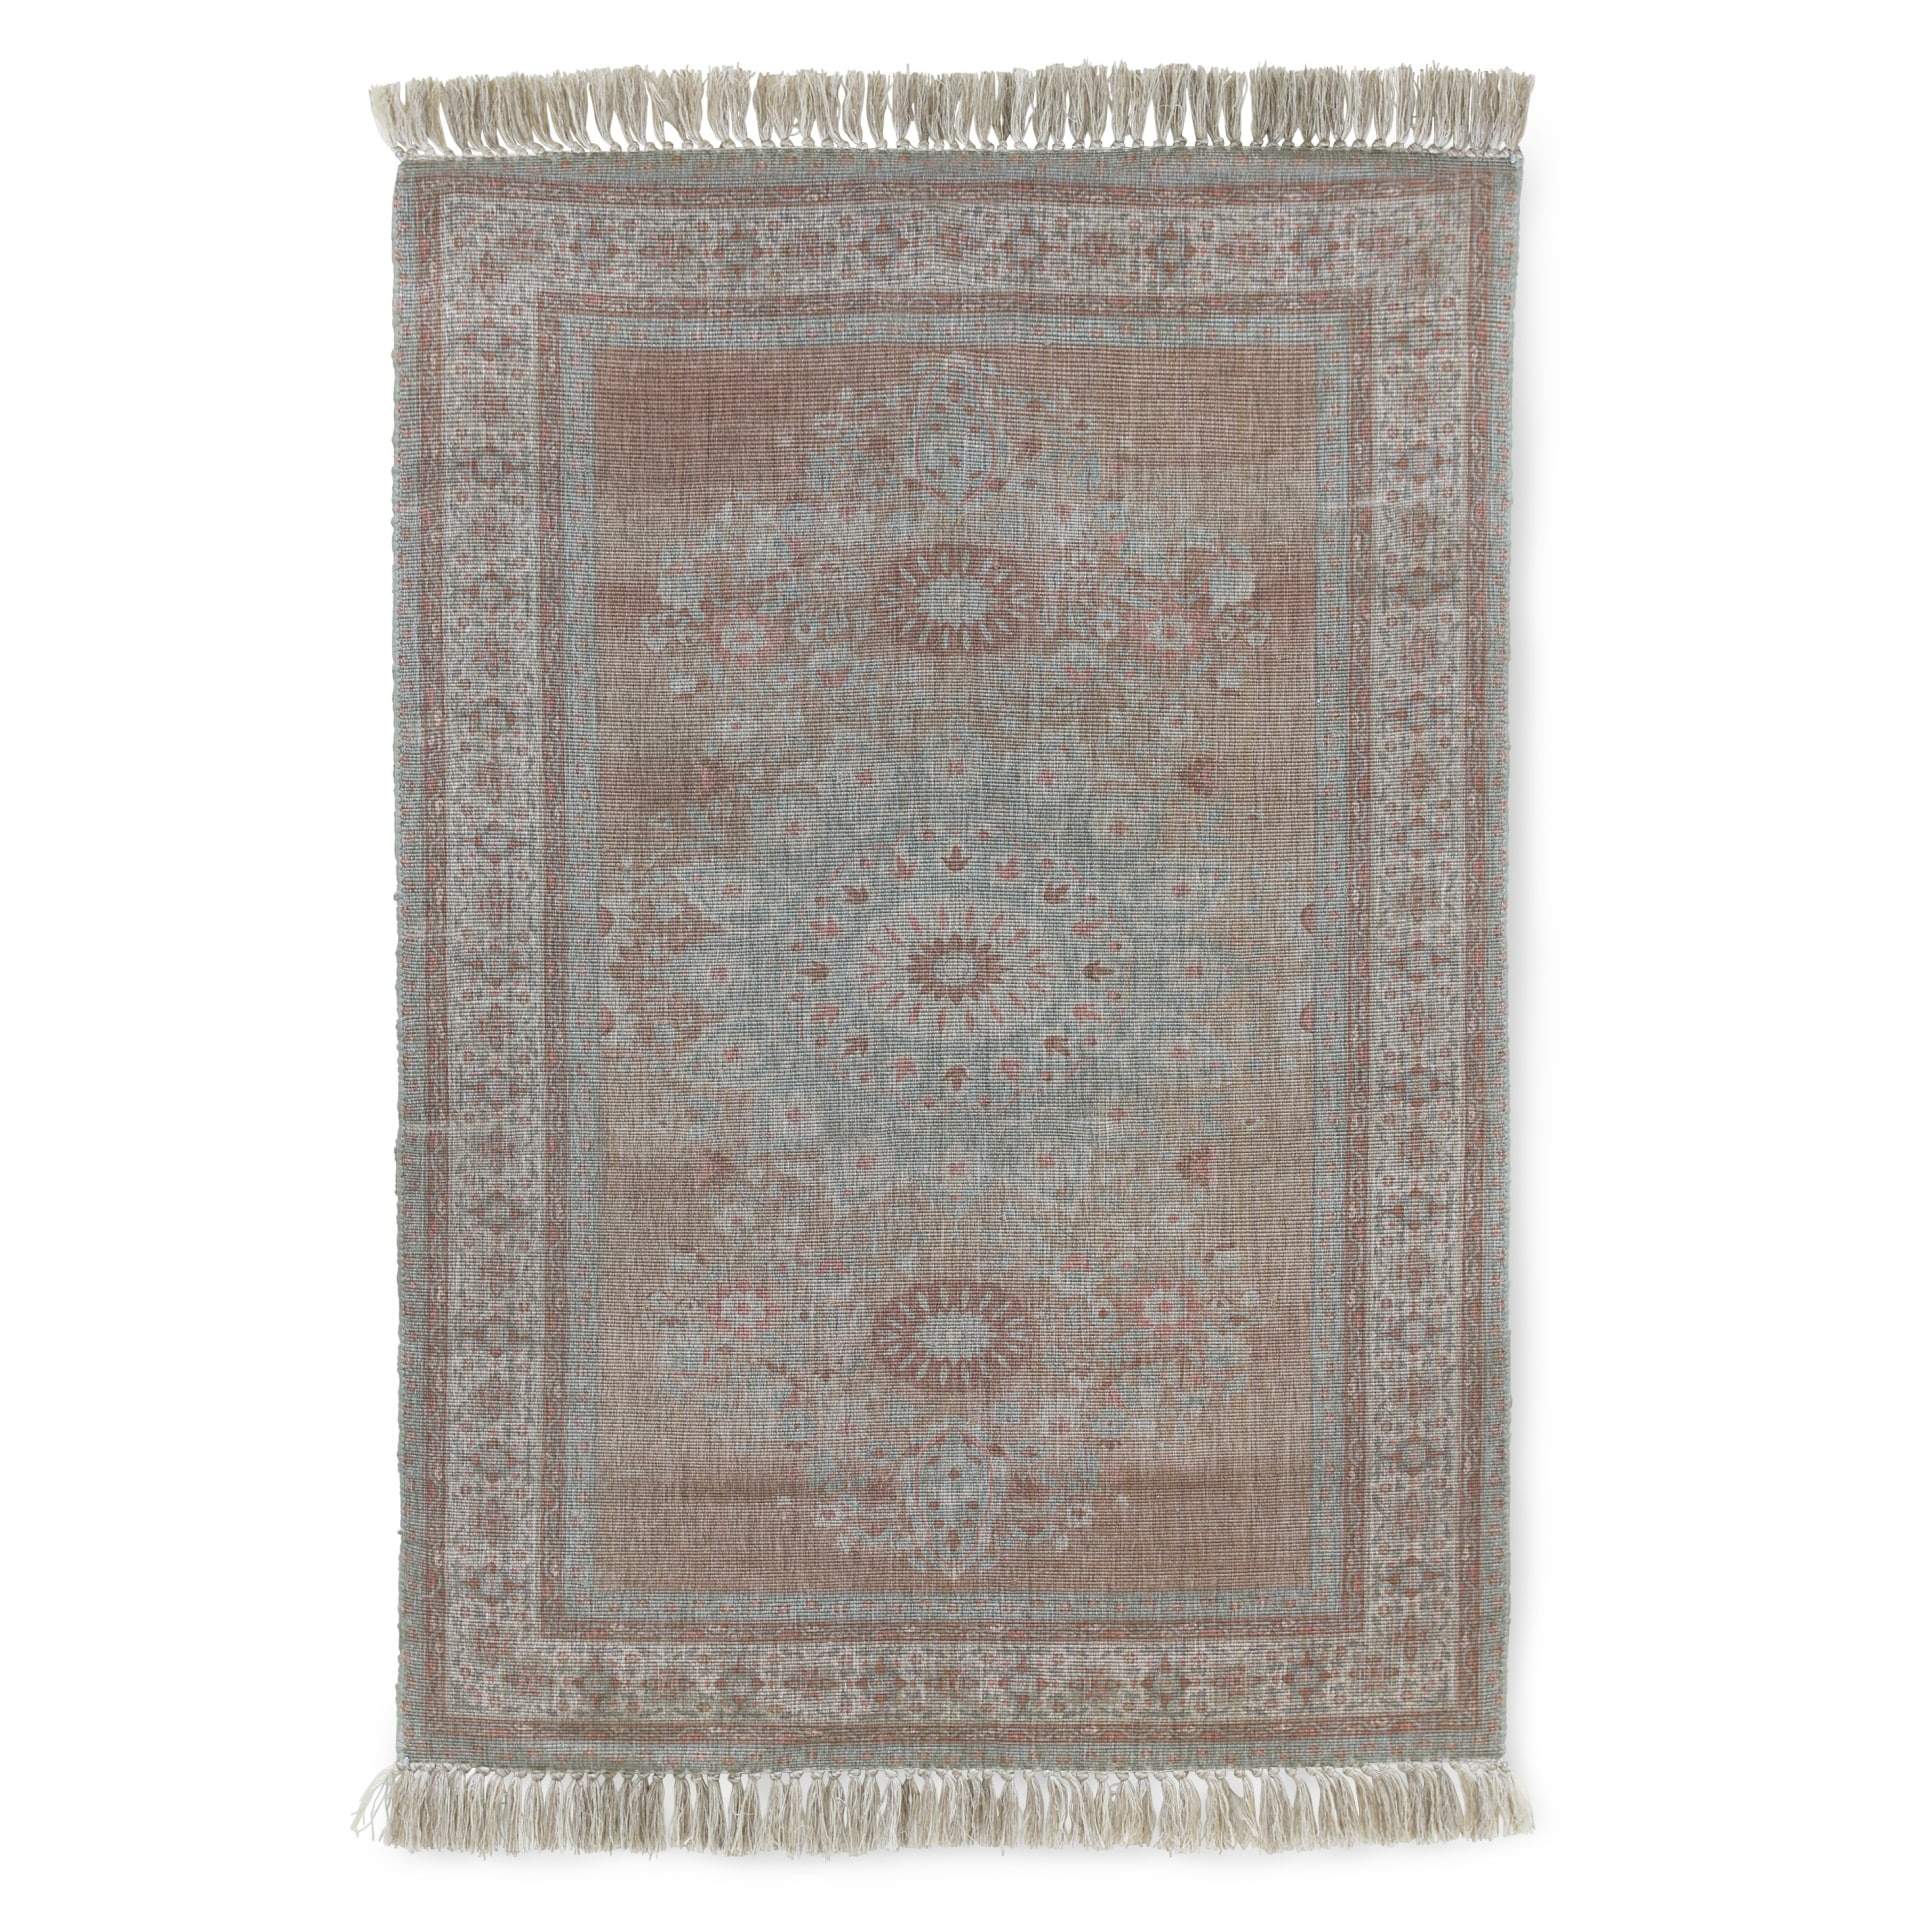 Vnitřní/venkovní ručně tkaný koberec Printed 120x180 cm | Bella Rose